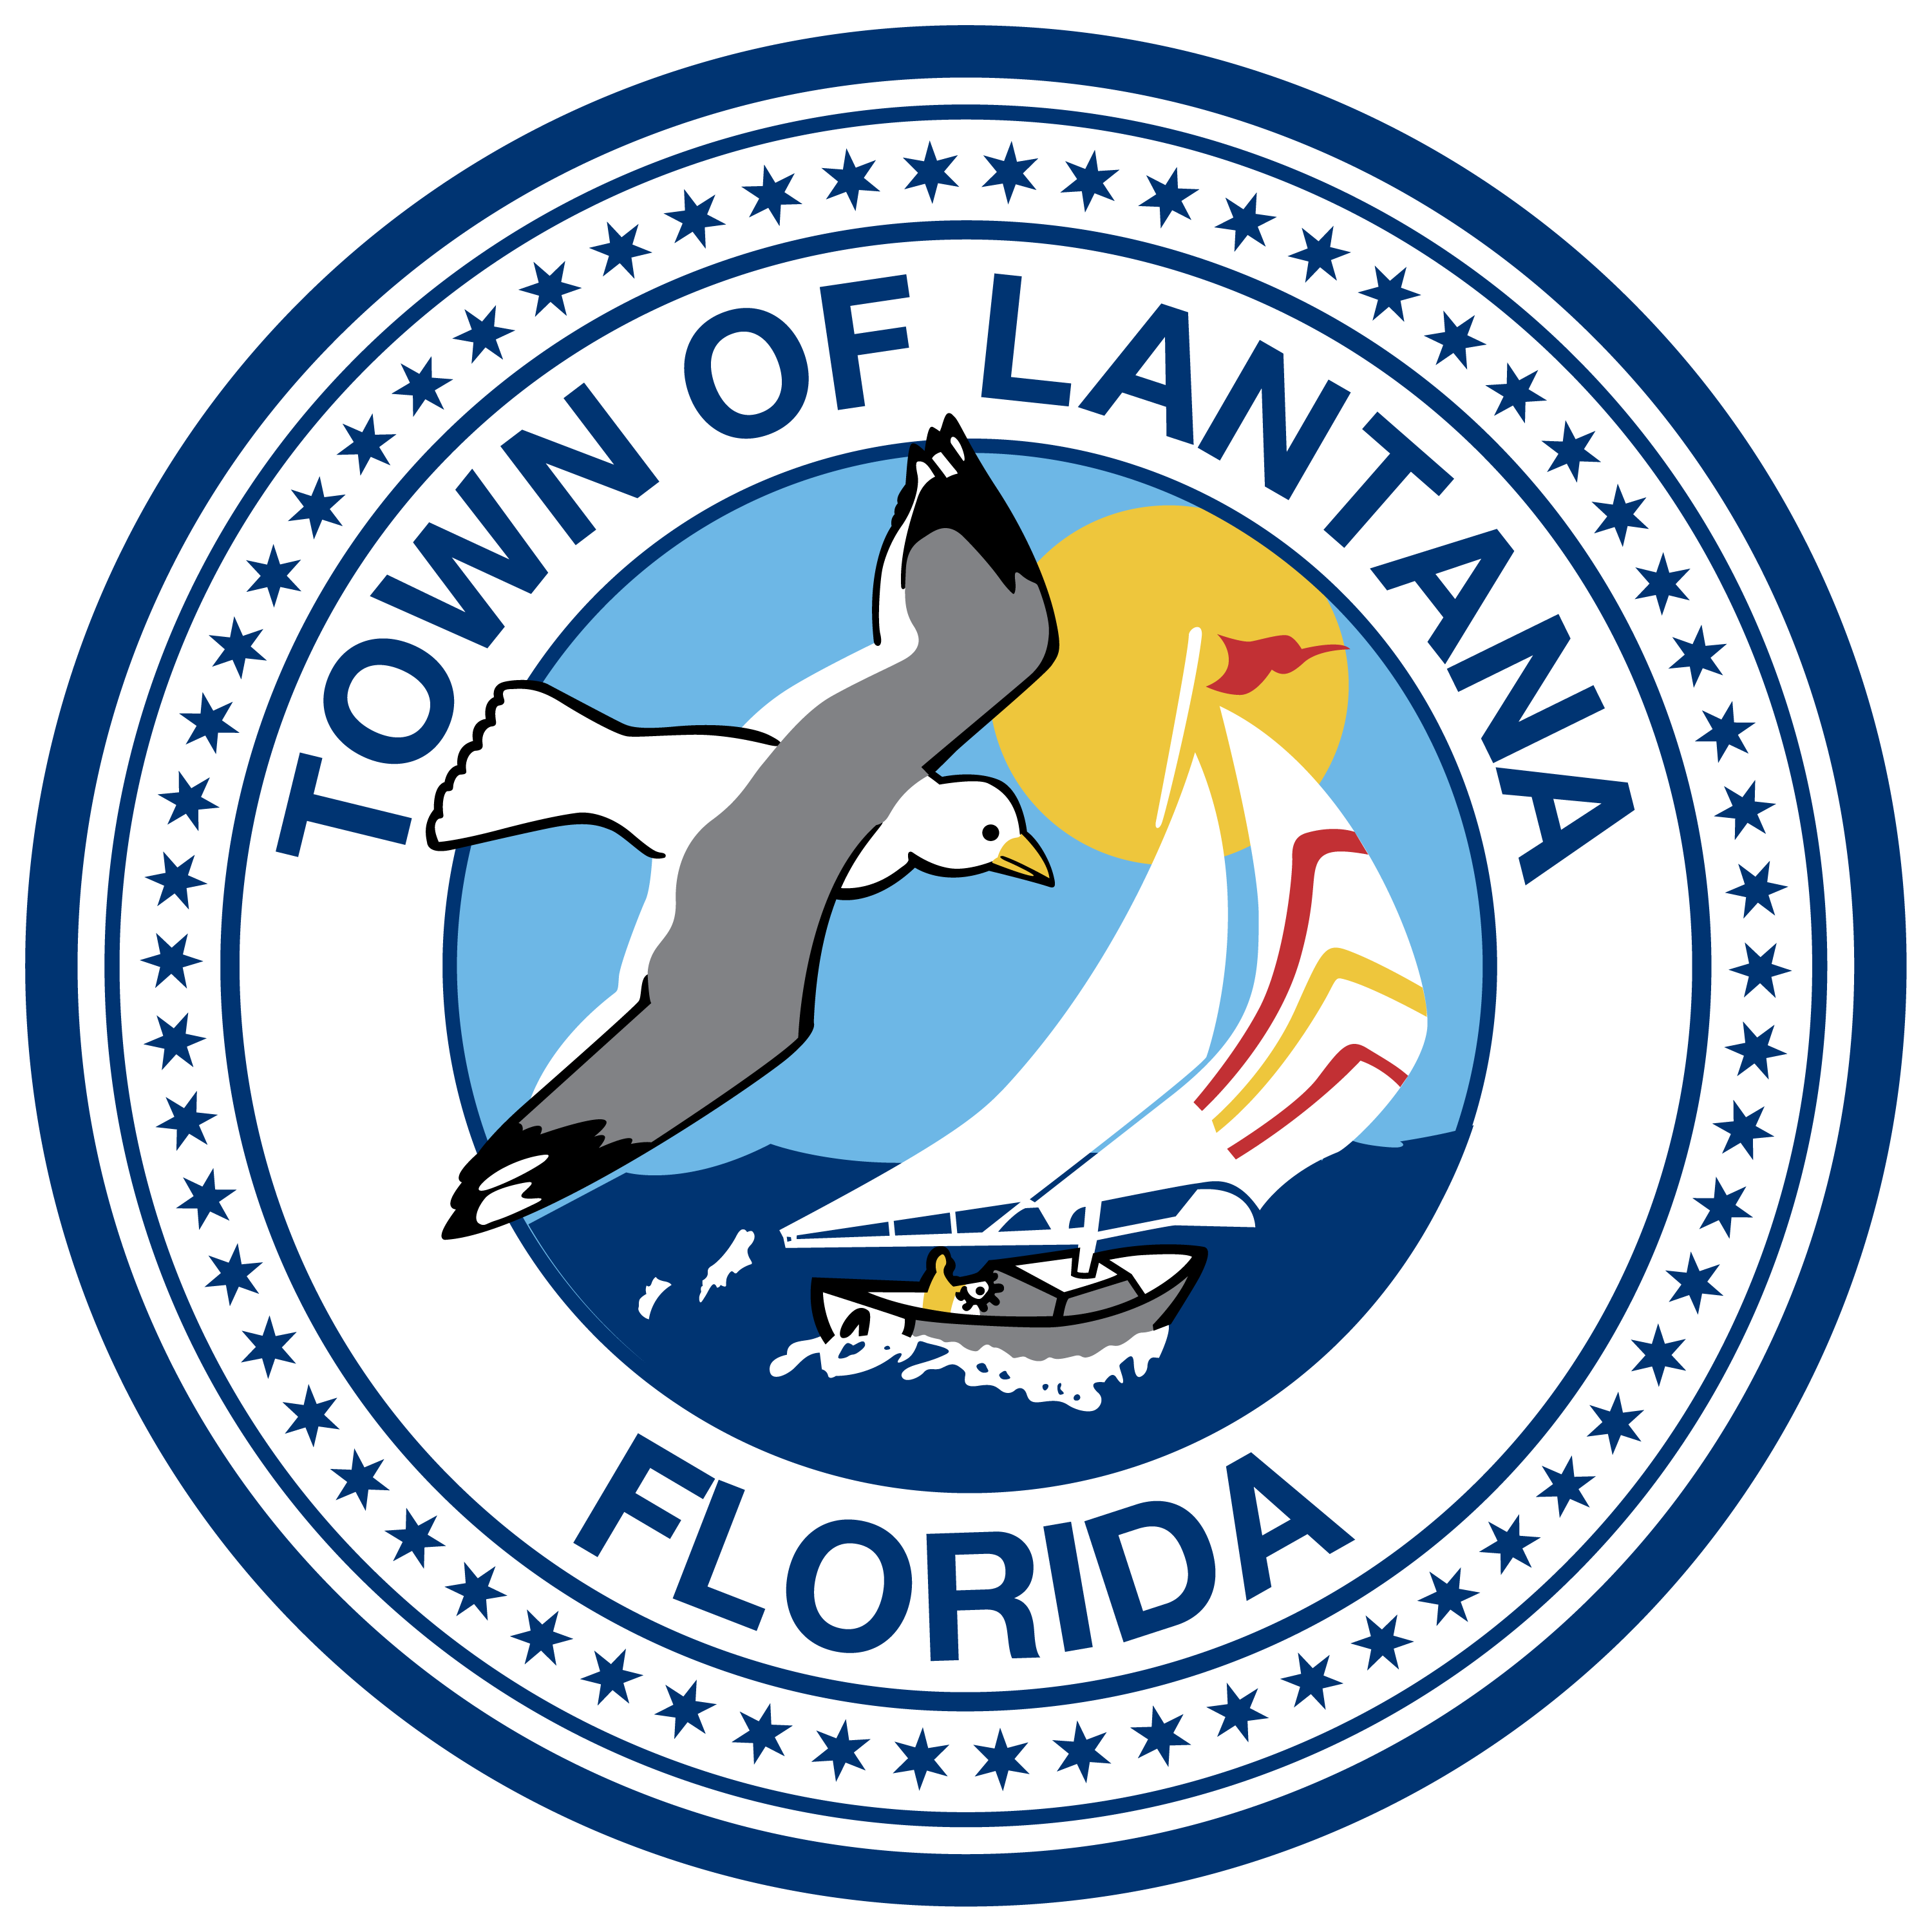 Lantana, Florida logo